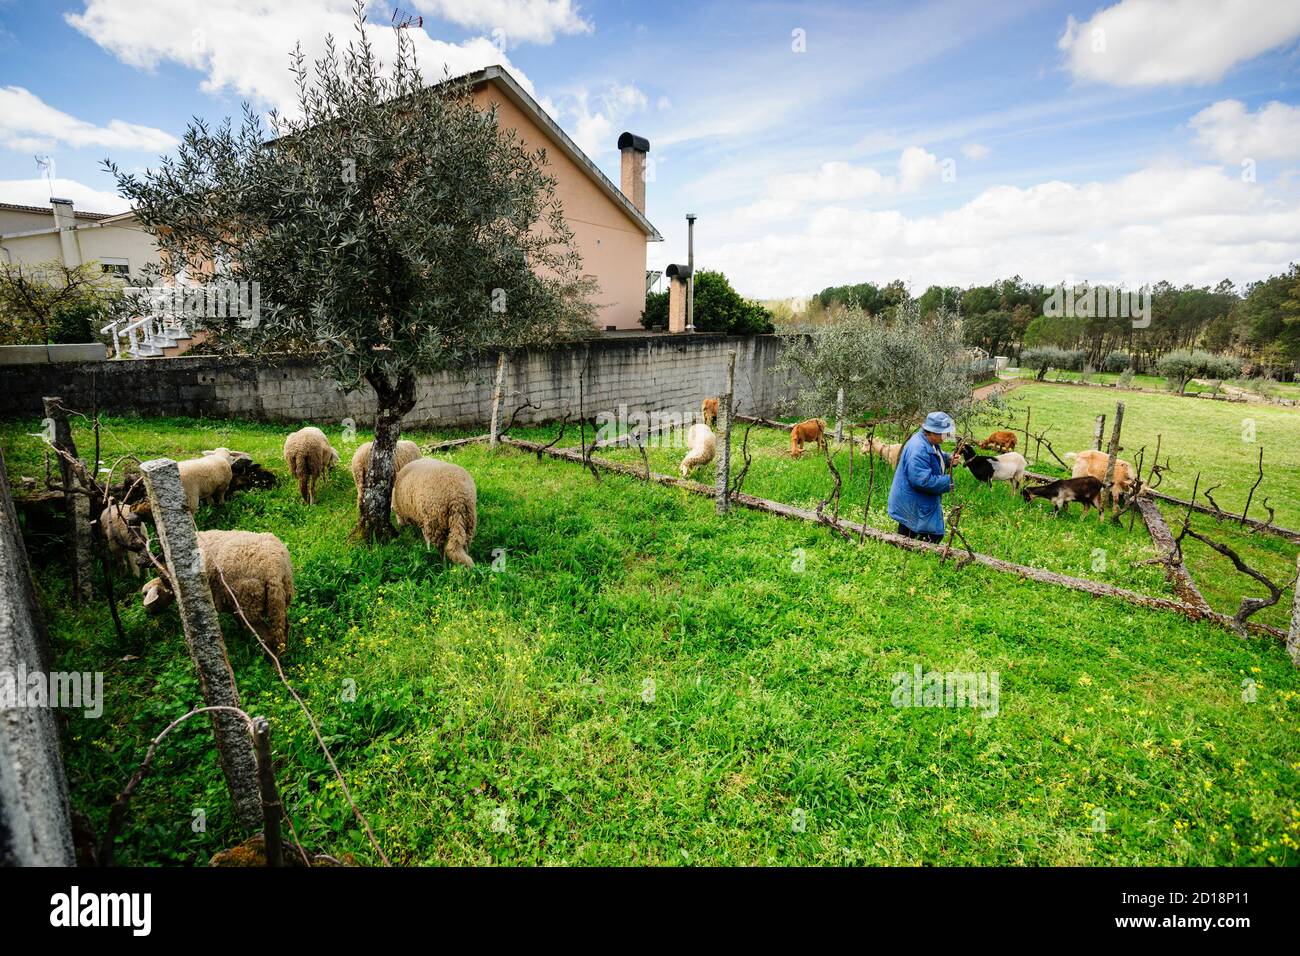 rebaño de ovejas,Cunha Baixa, Beira Baixa, Portugal, europa Stock Photo